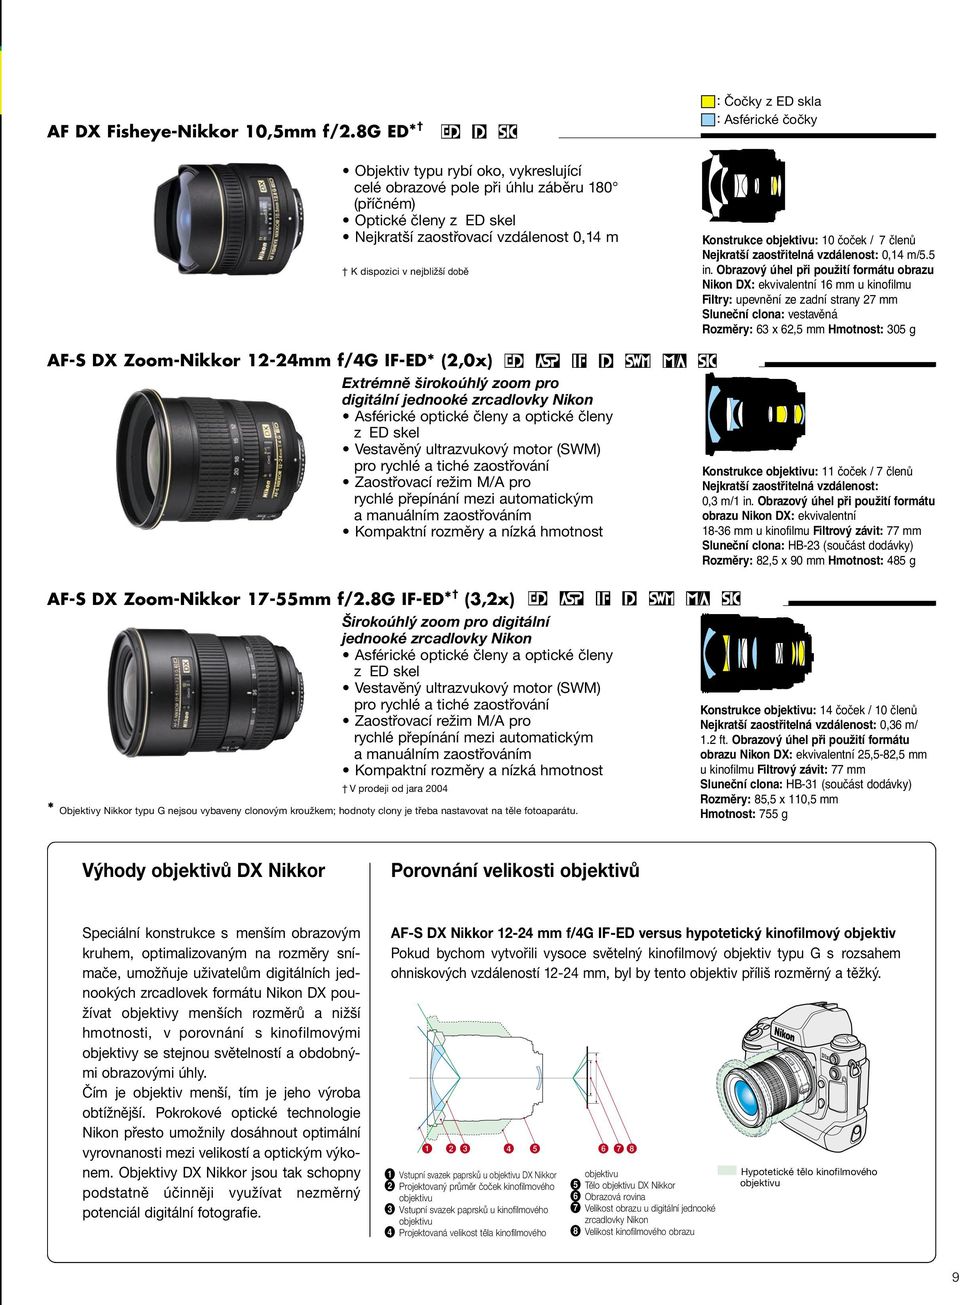 K dispozici v nejbližší době AF-S DX Zoom-Nikkor 12-24mm f/4g IF-ED* (2,0x) Extrémně širokoúhlý zoom pro digitální jednooké zrcadlovky Nikon Asférické optické členy a optické členy z ED skel